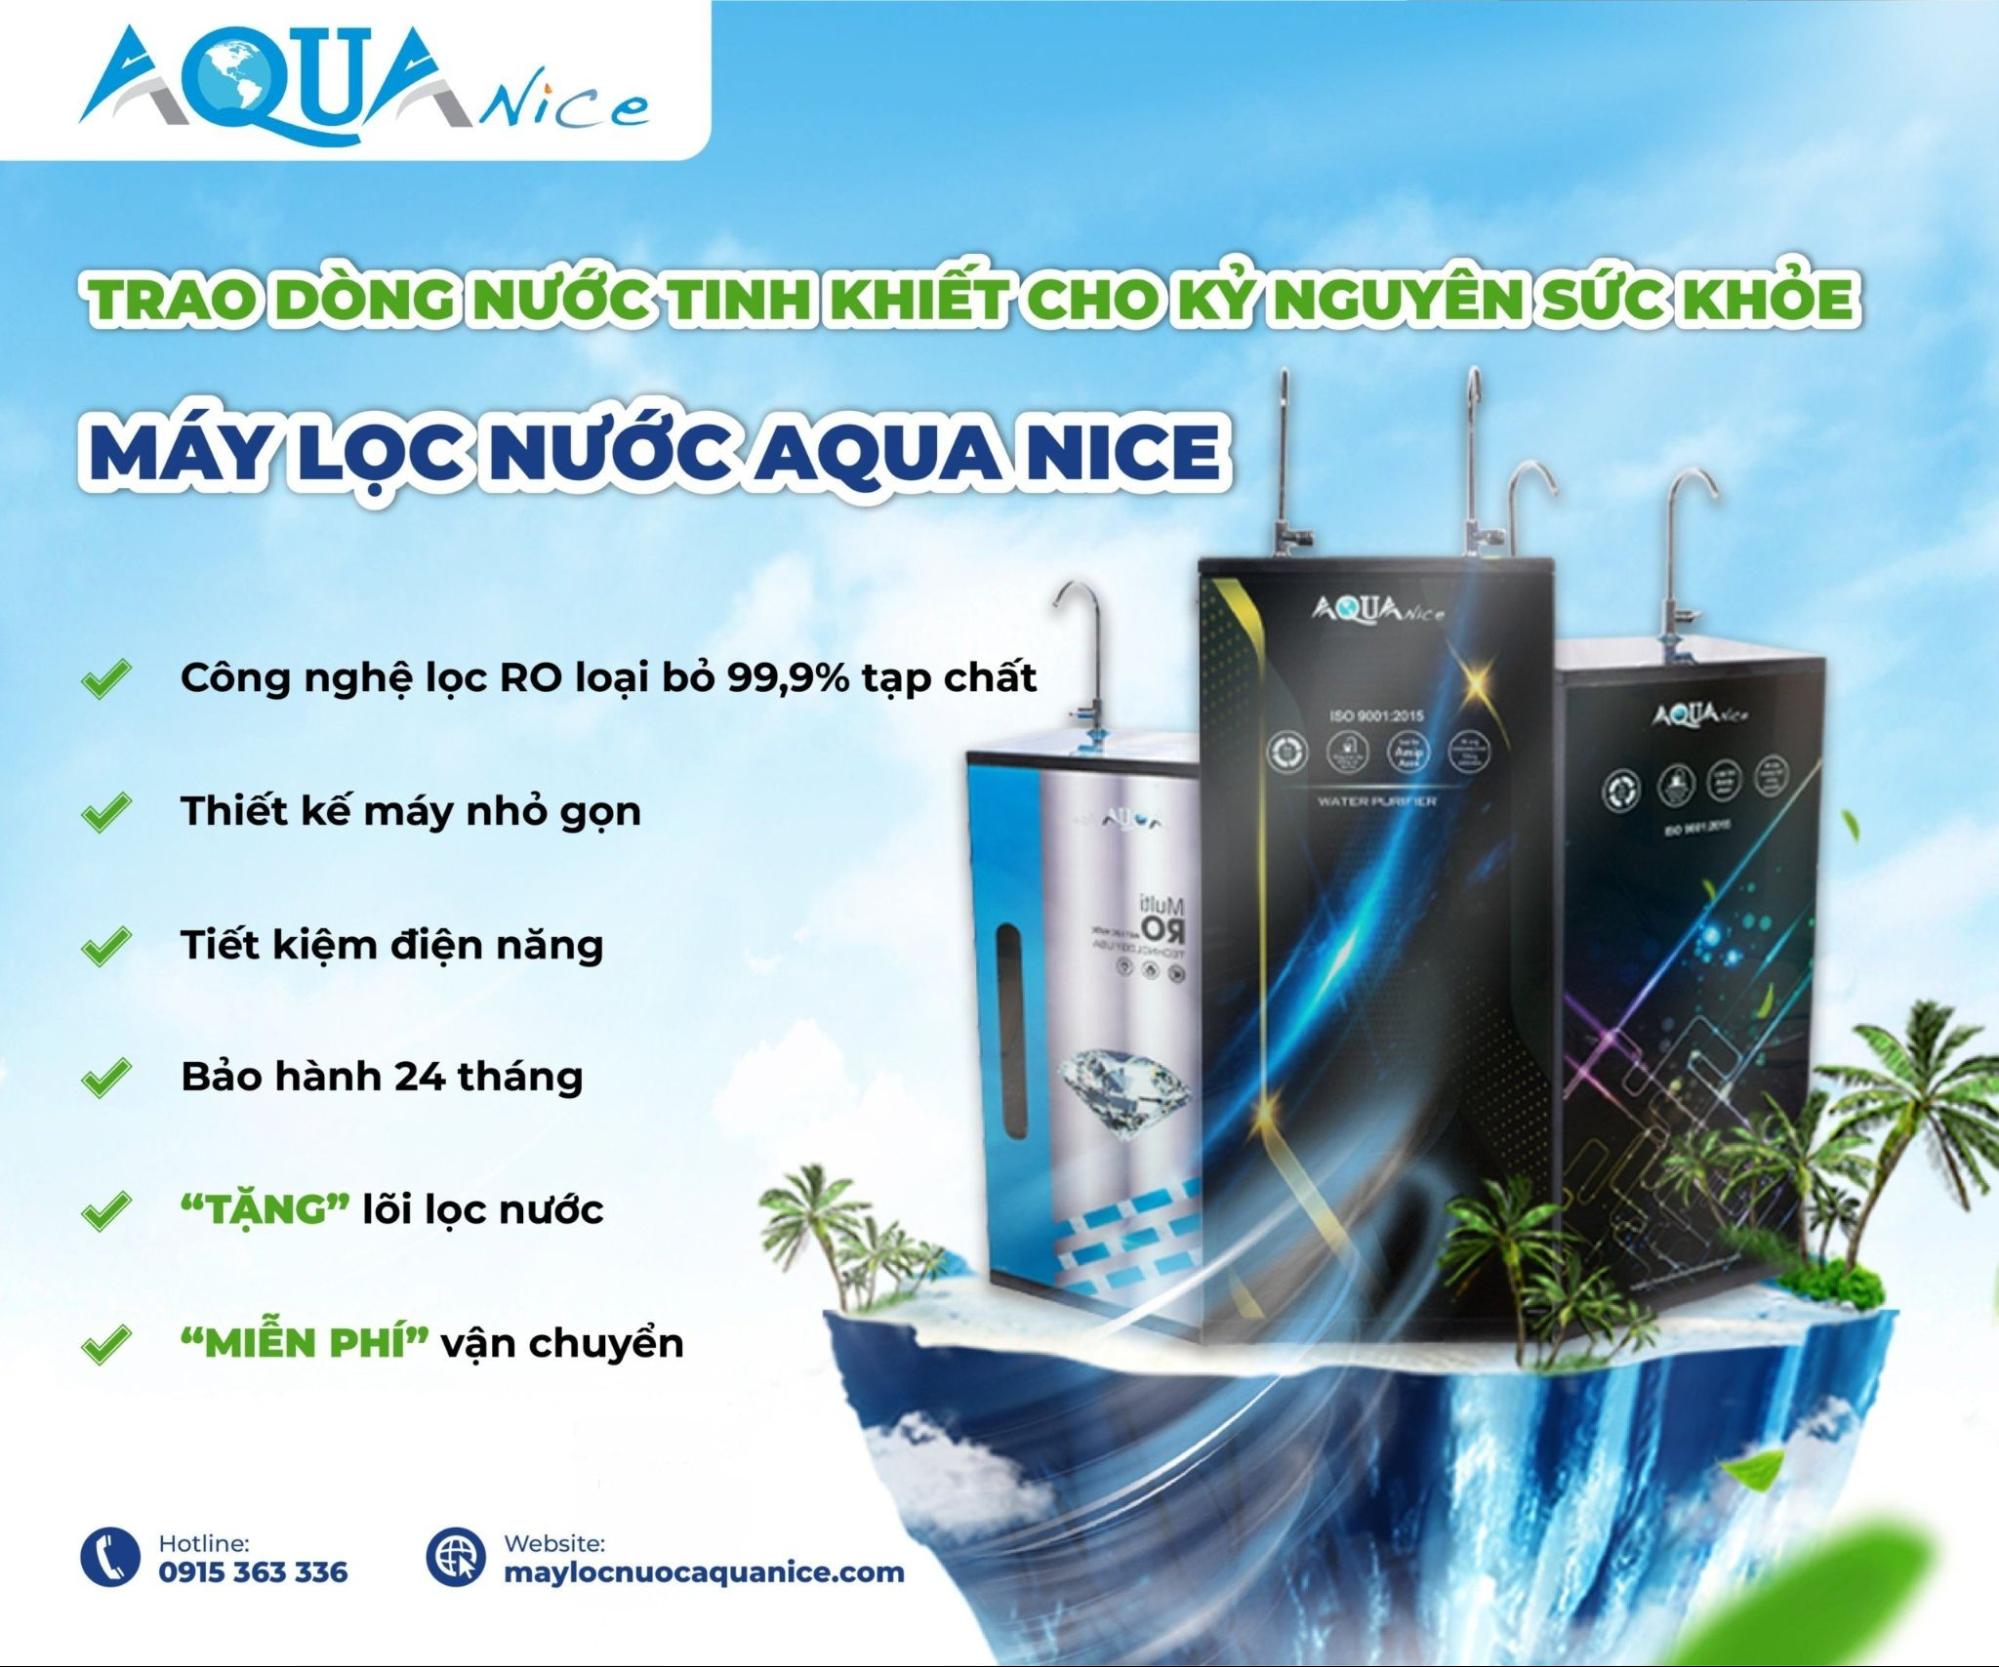 Giá máy thanh lọc nước rét giá buốt Aqua biết bao dạng